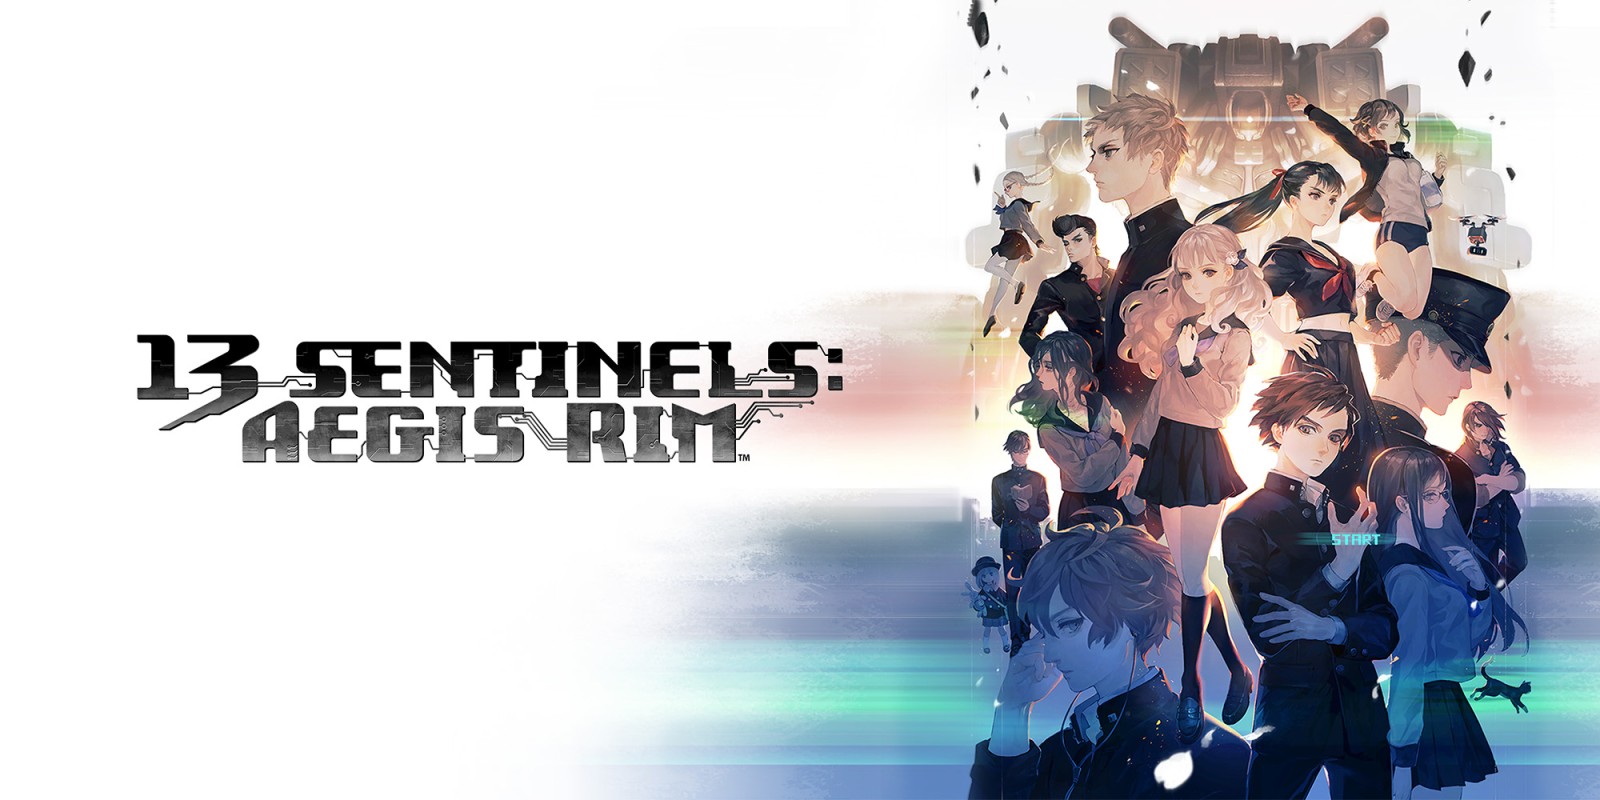 Mise à jour du contenu pour la version PS4 de 13 Sentinels : Aegis Rim